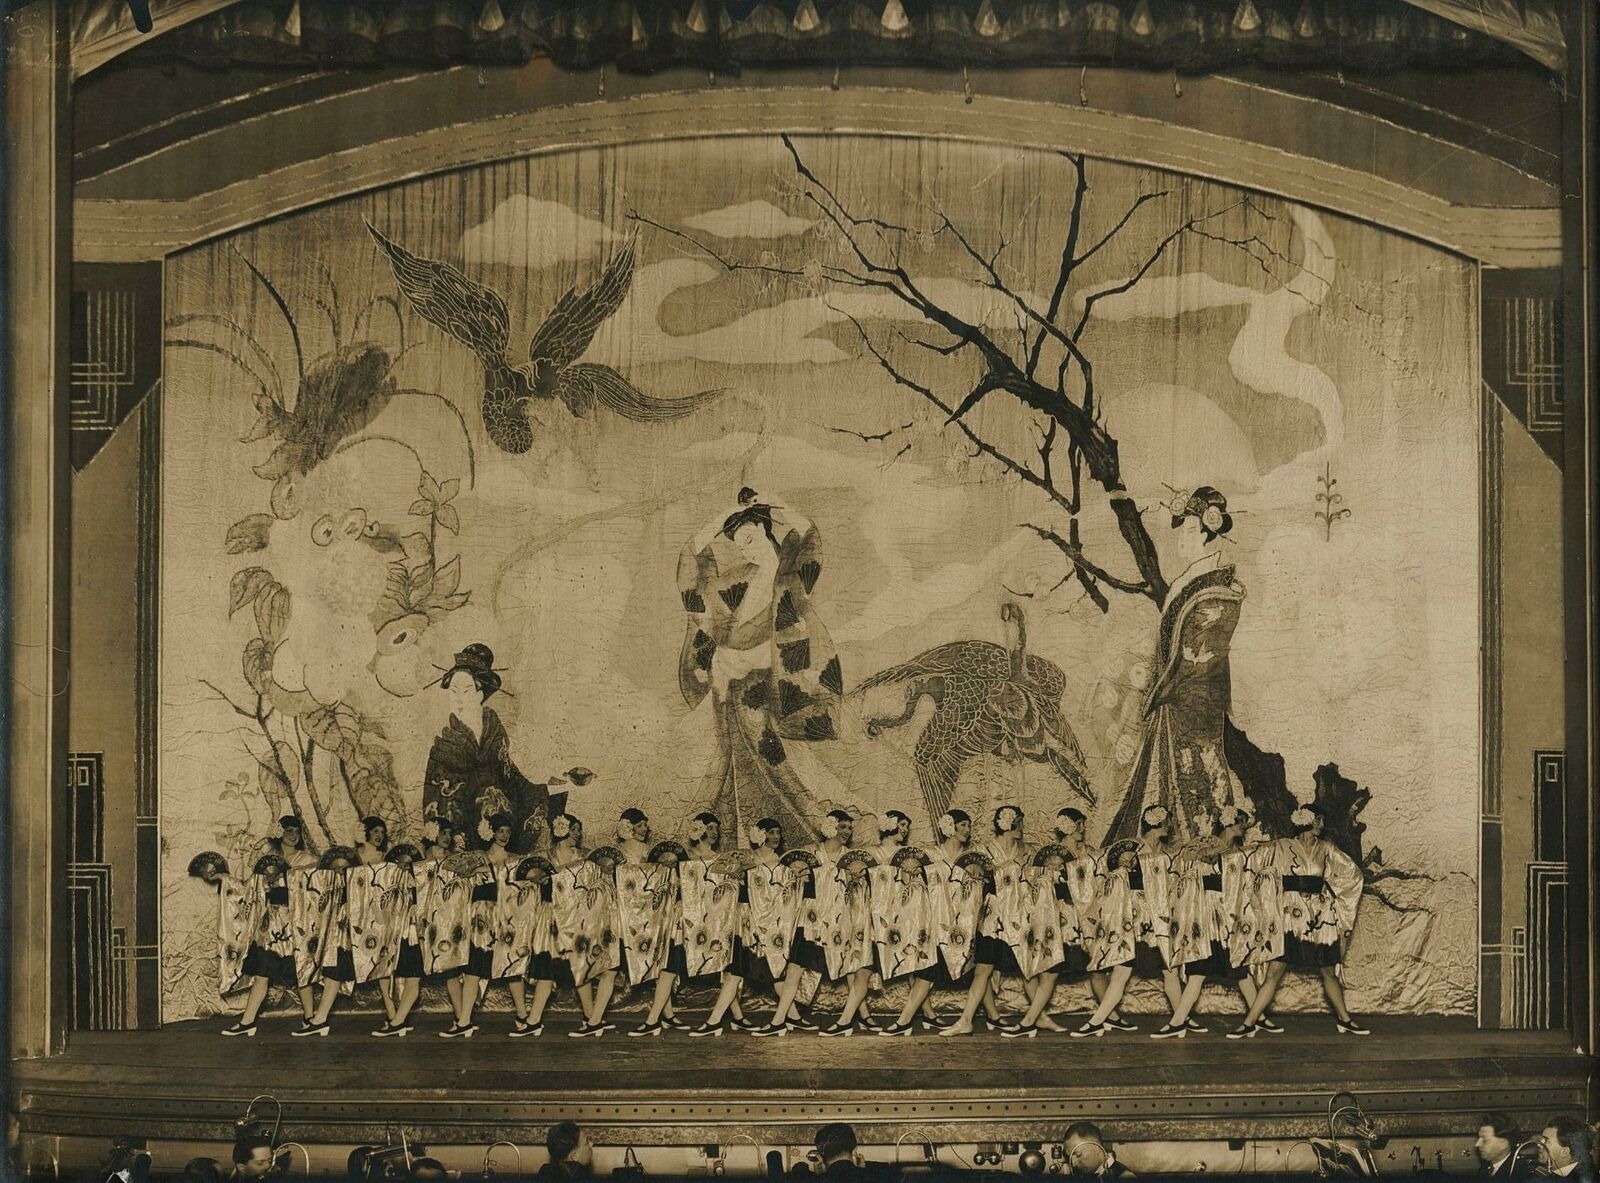 1931 Folies Bergère Photo by Lucien Walery ART DECO